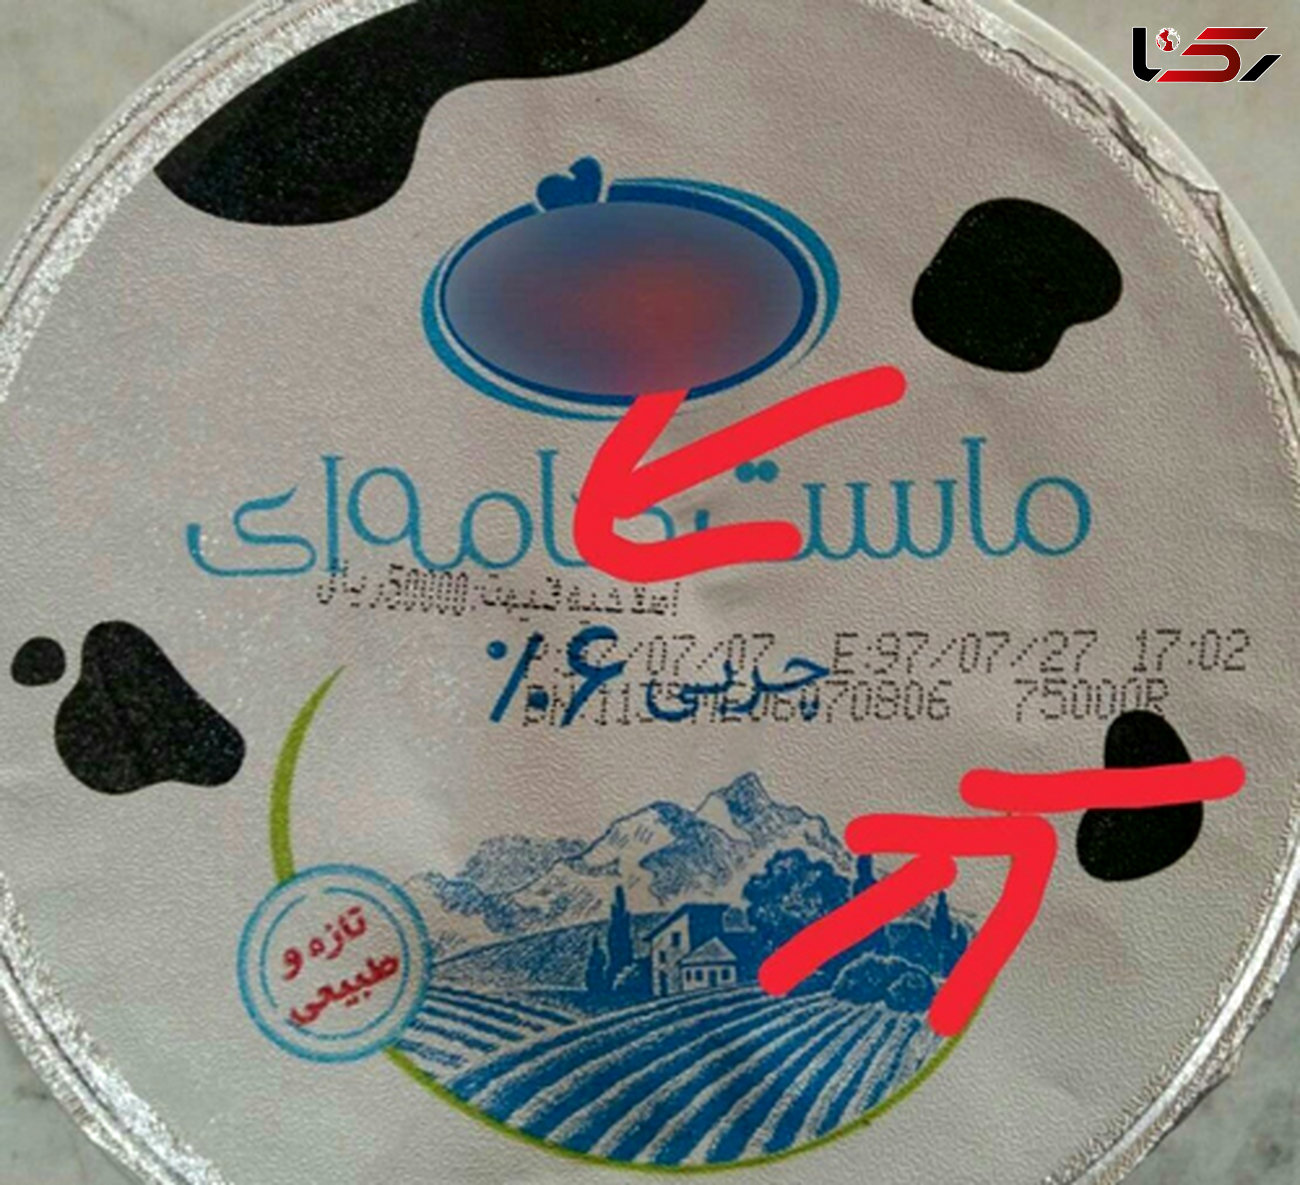 کار عجیب یک شرکت لبنیاتی با ارزان شدن دلار+عکس